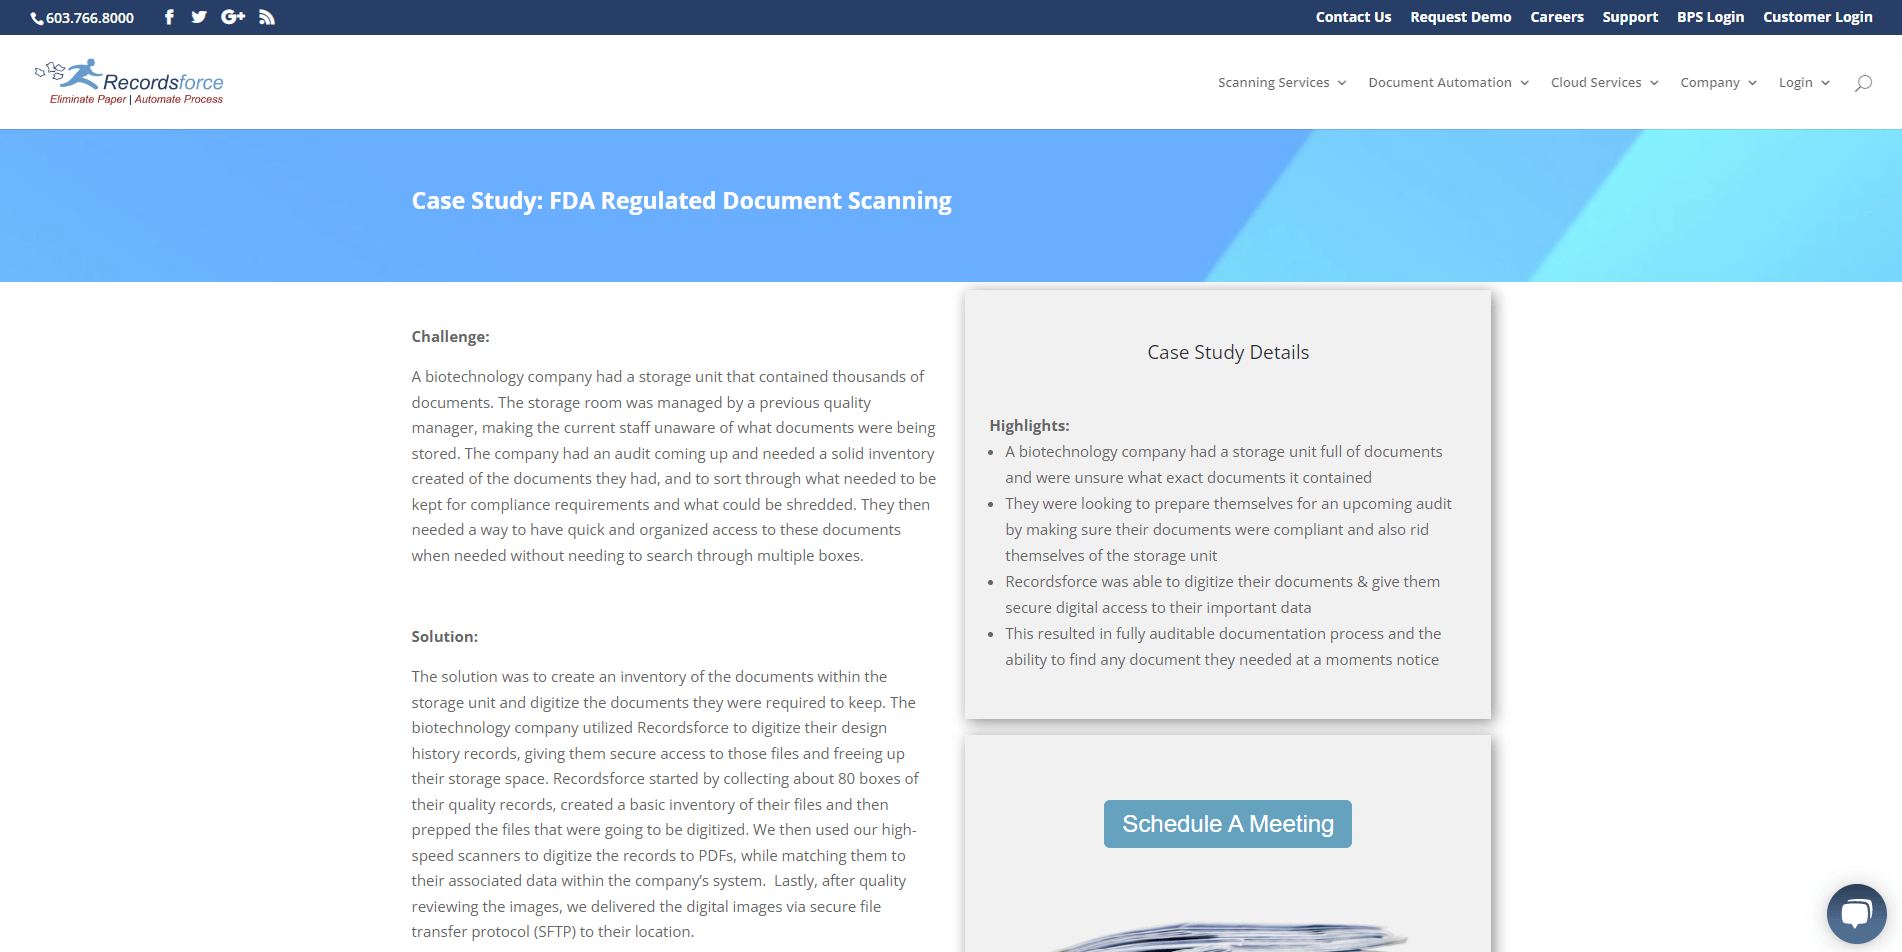 FDA Document Scanning